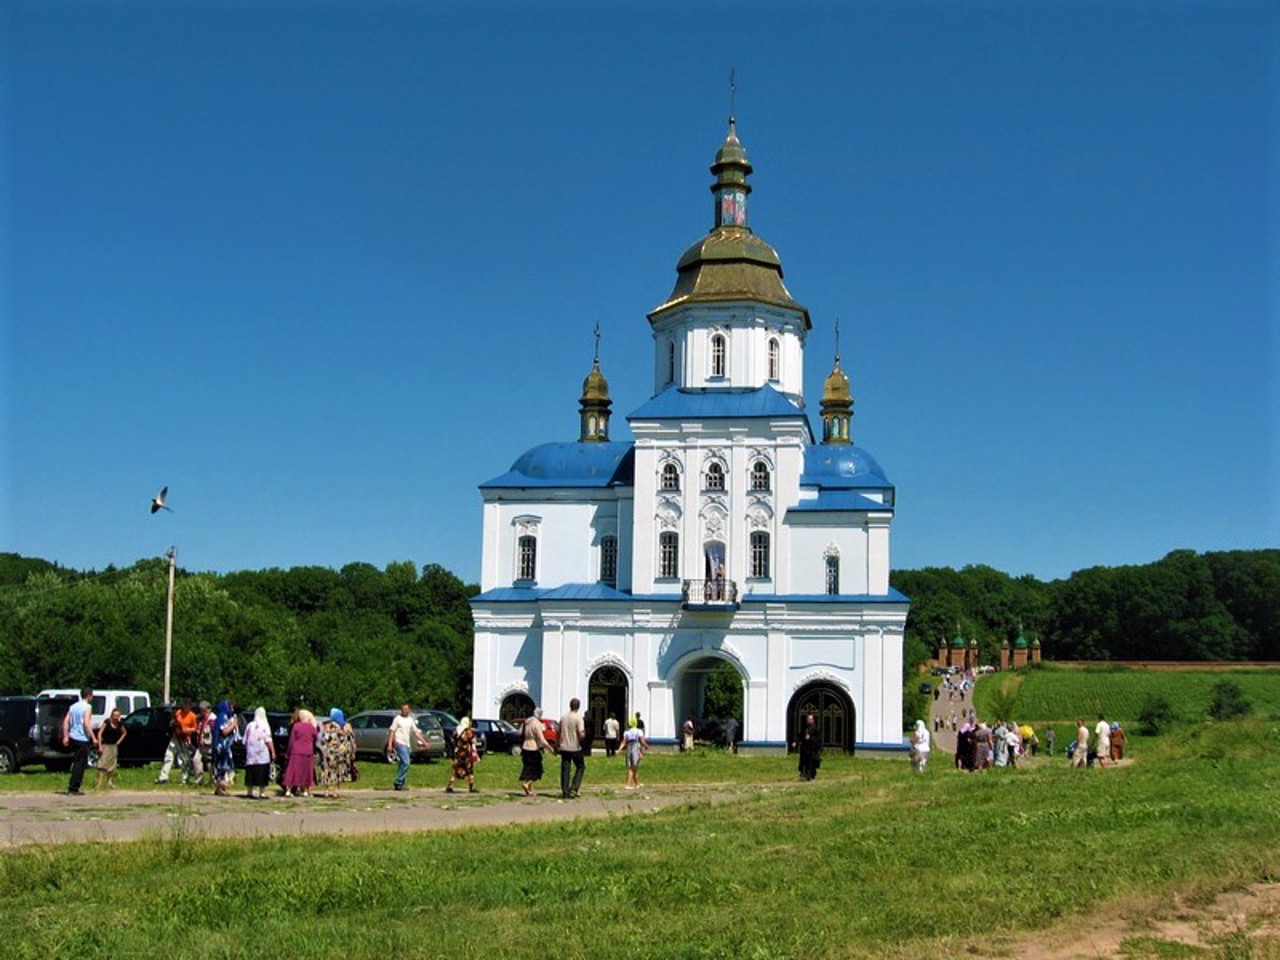 Sophronivsky Monastery, Nova Sloboda